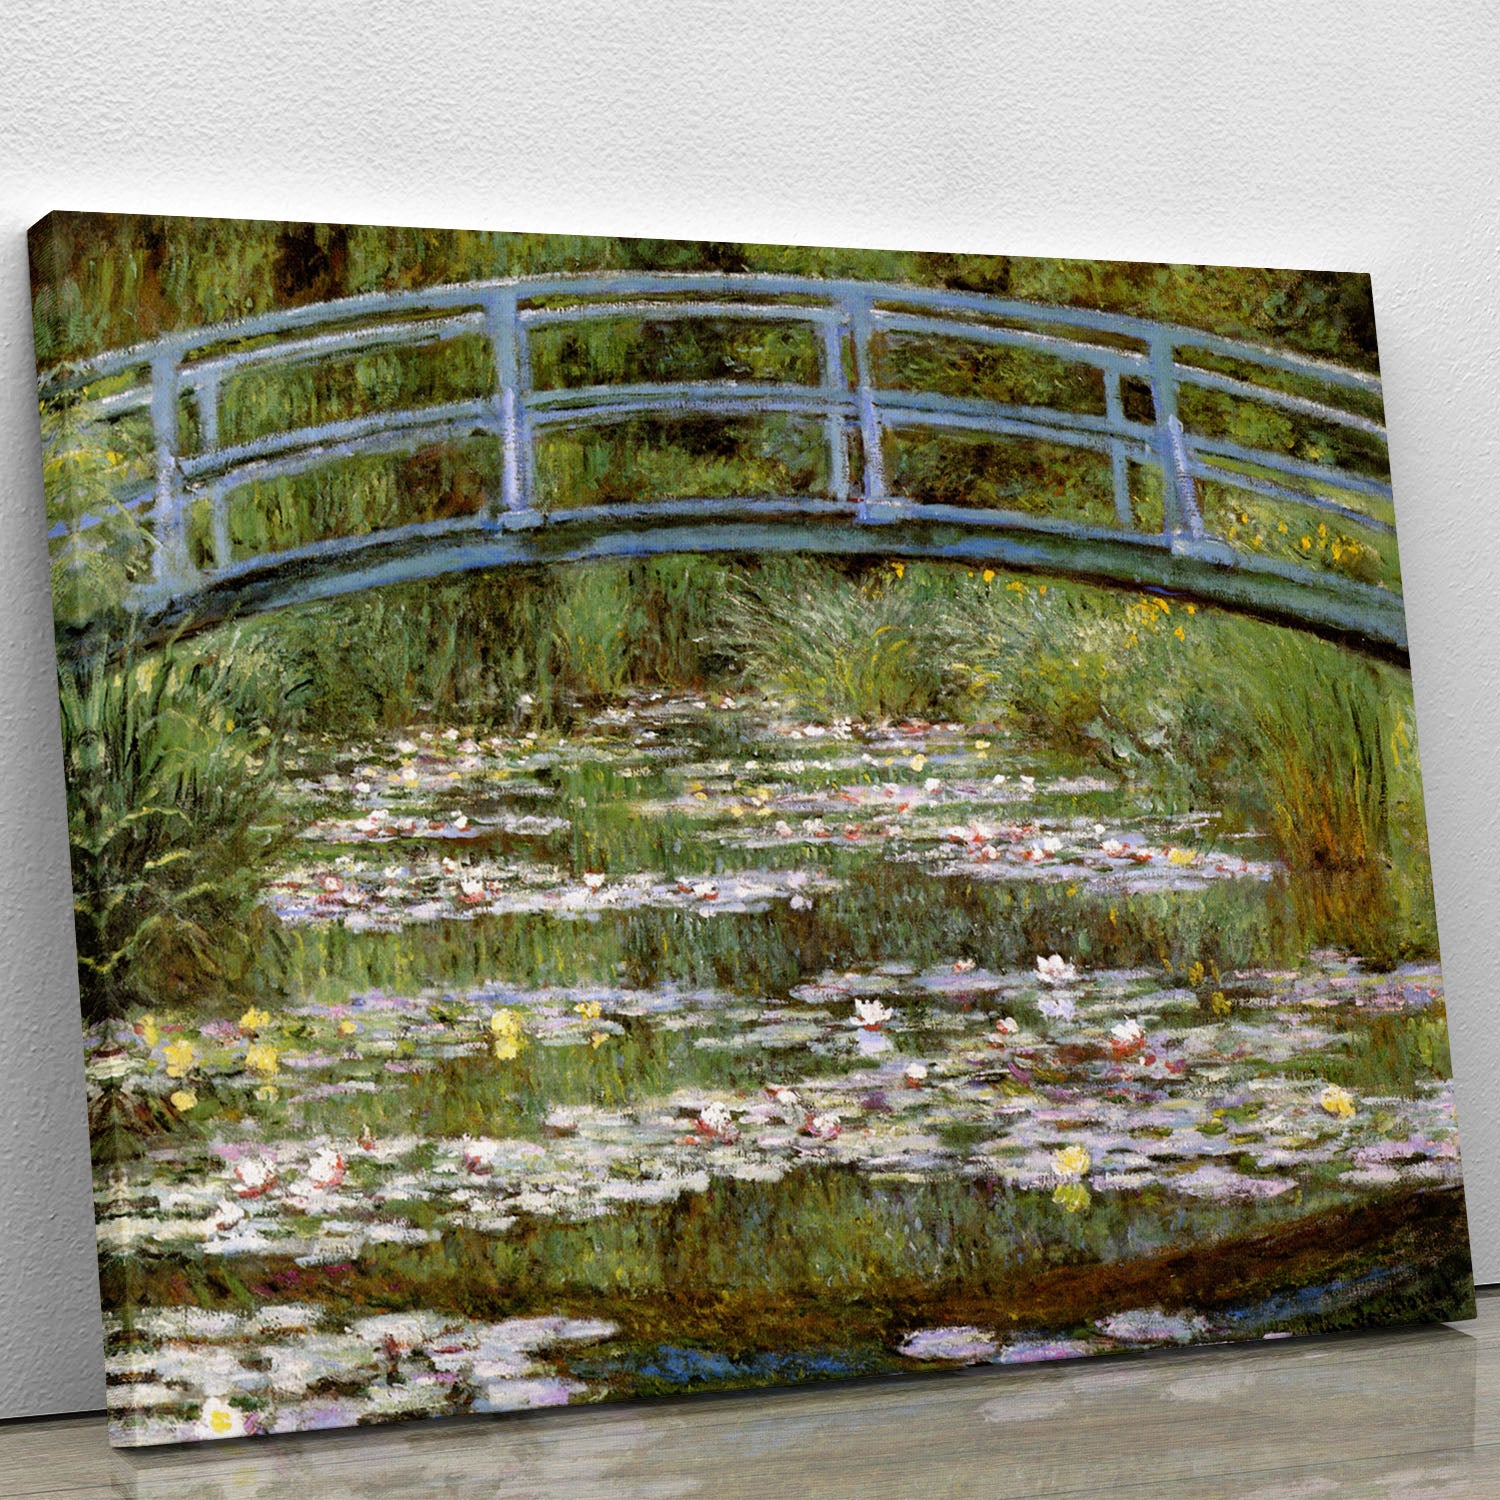 Le Pont Japonais by Monet Canvas Print or Poster - Canvas Art Rocks - 1